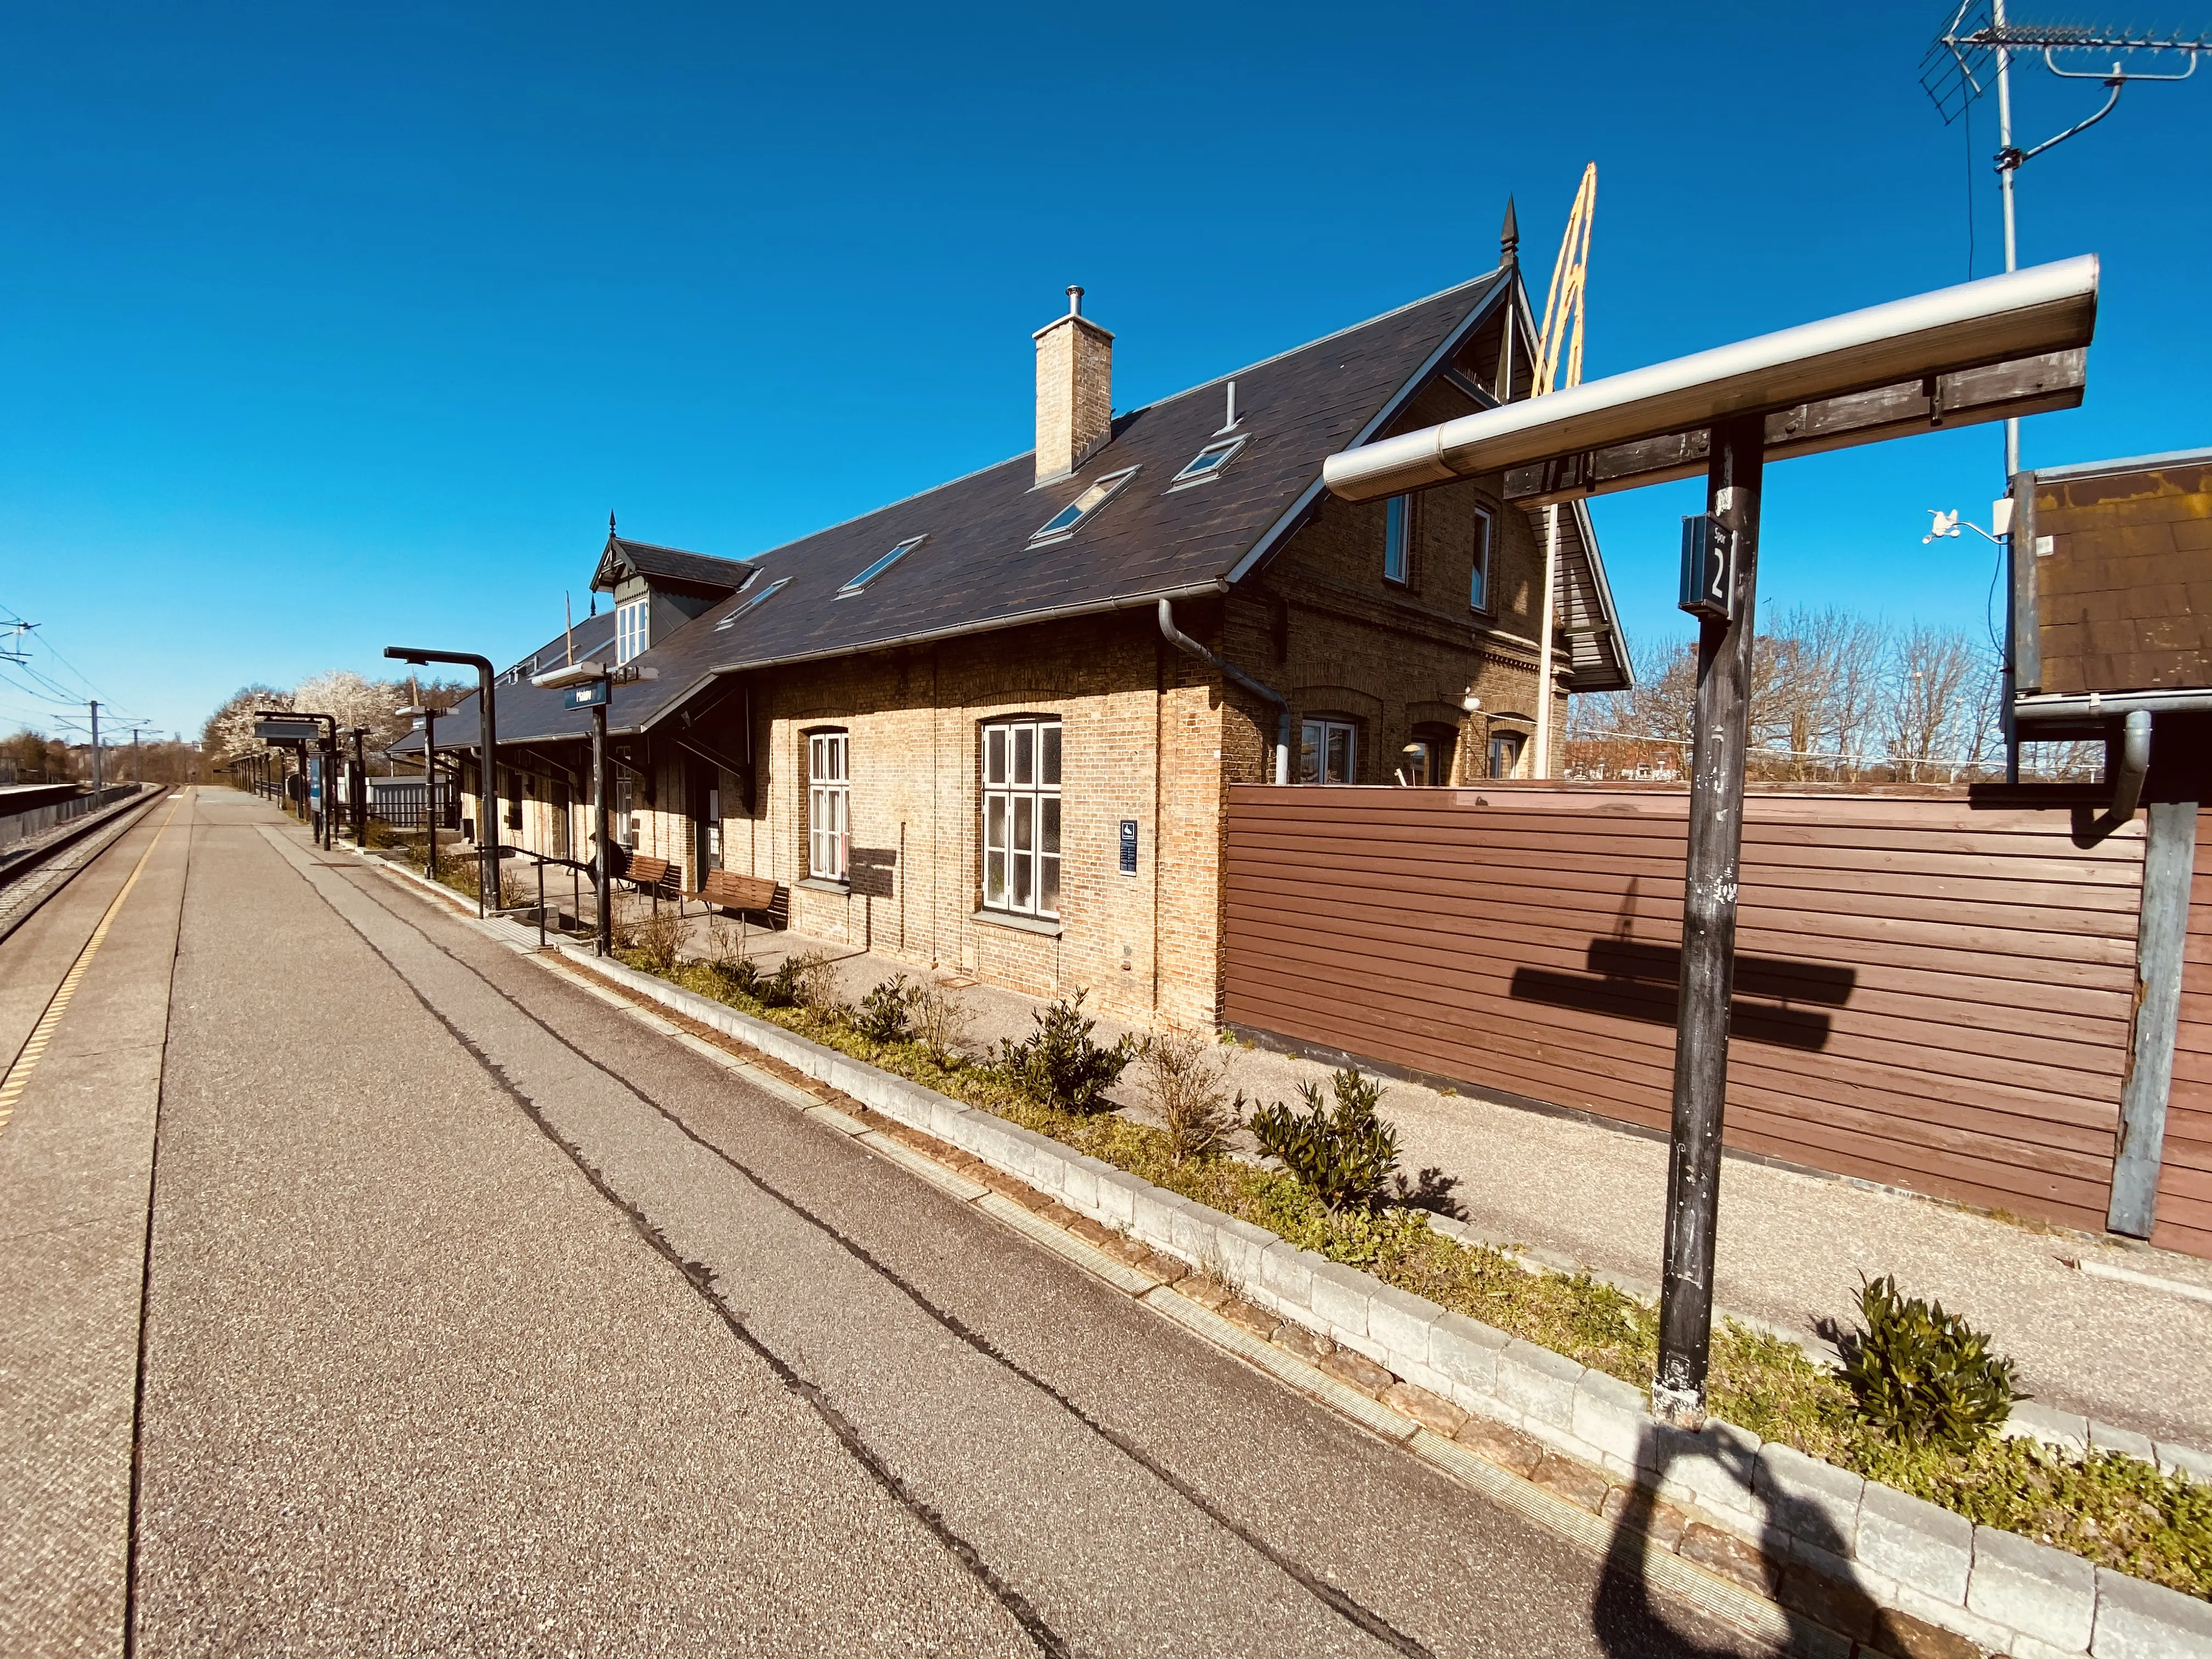 Måløv Station.